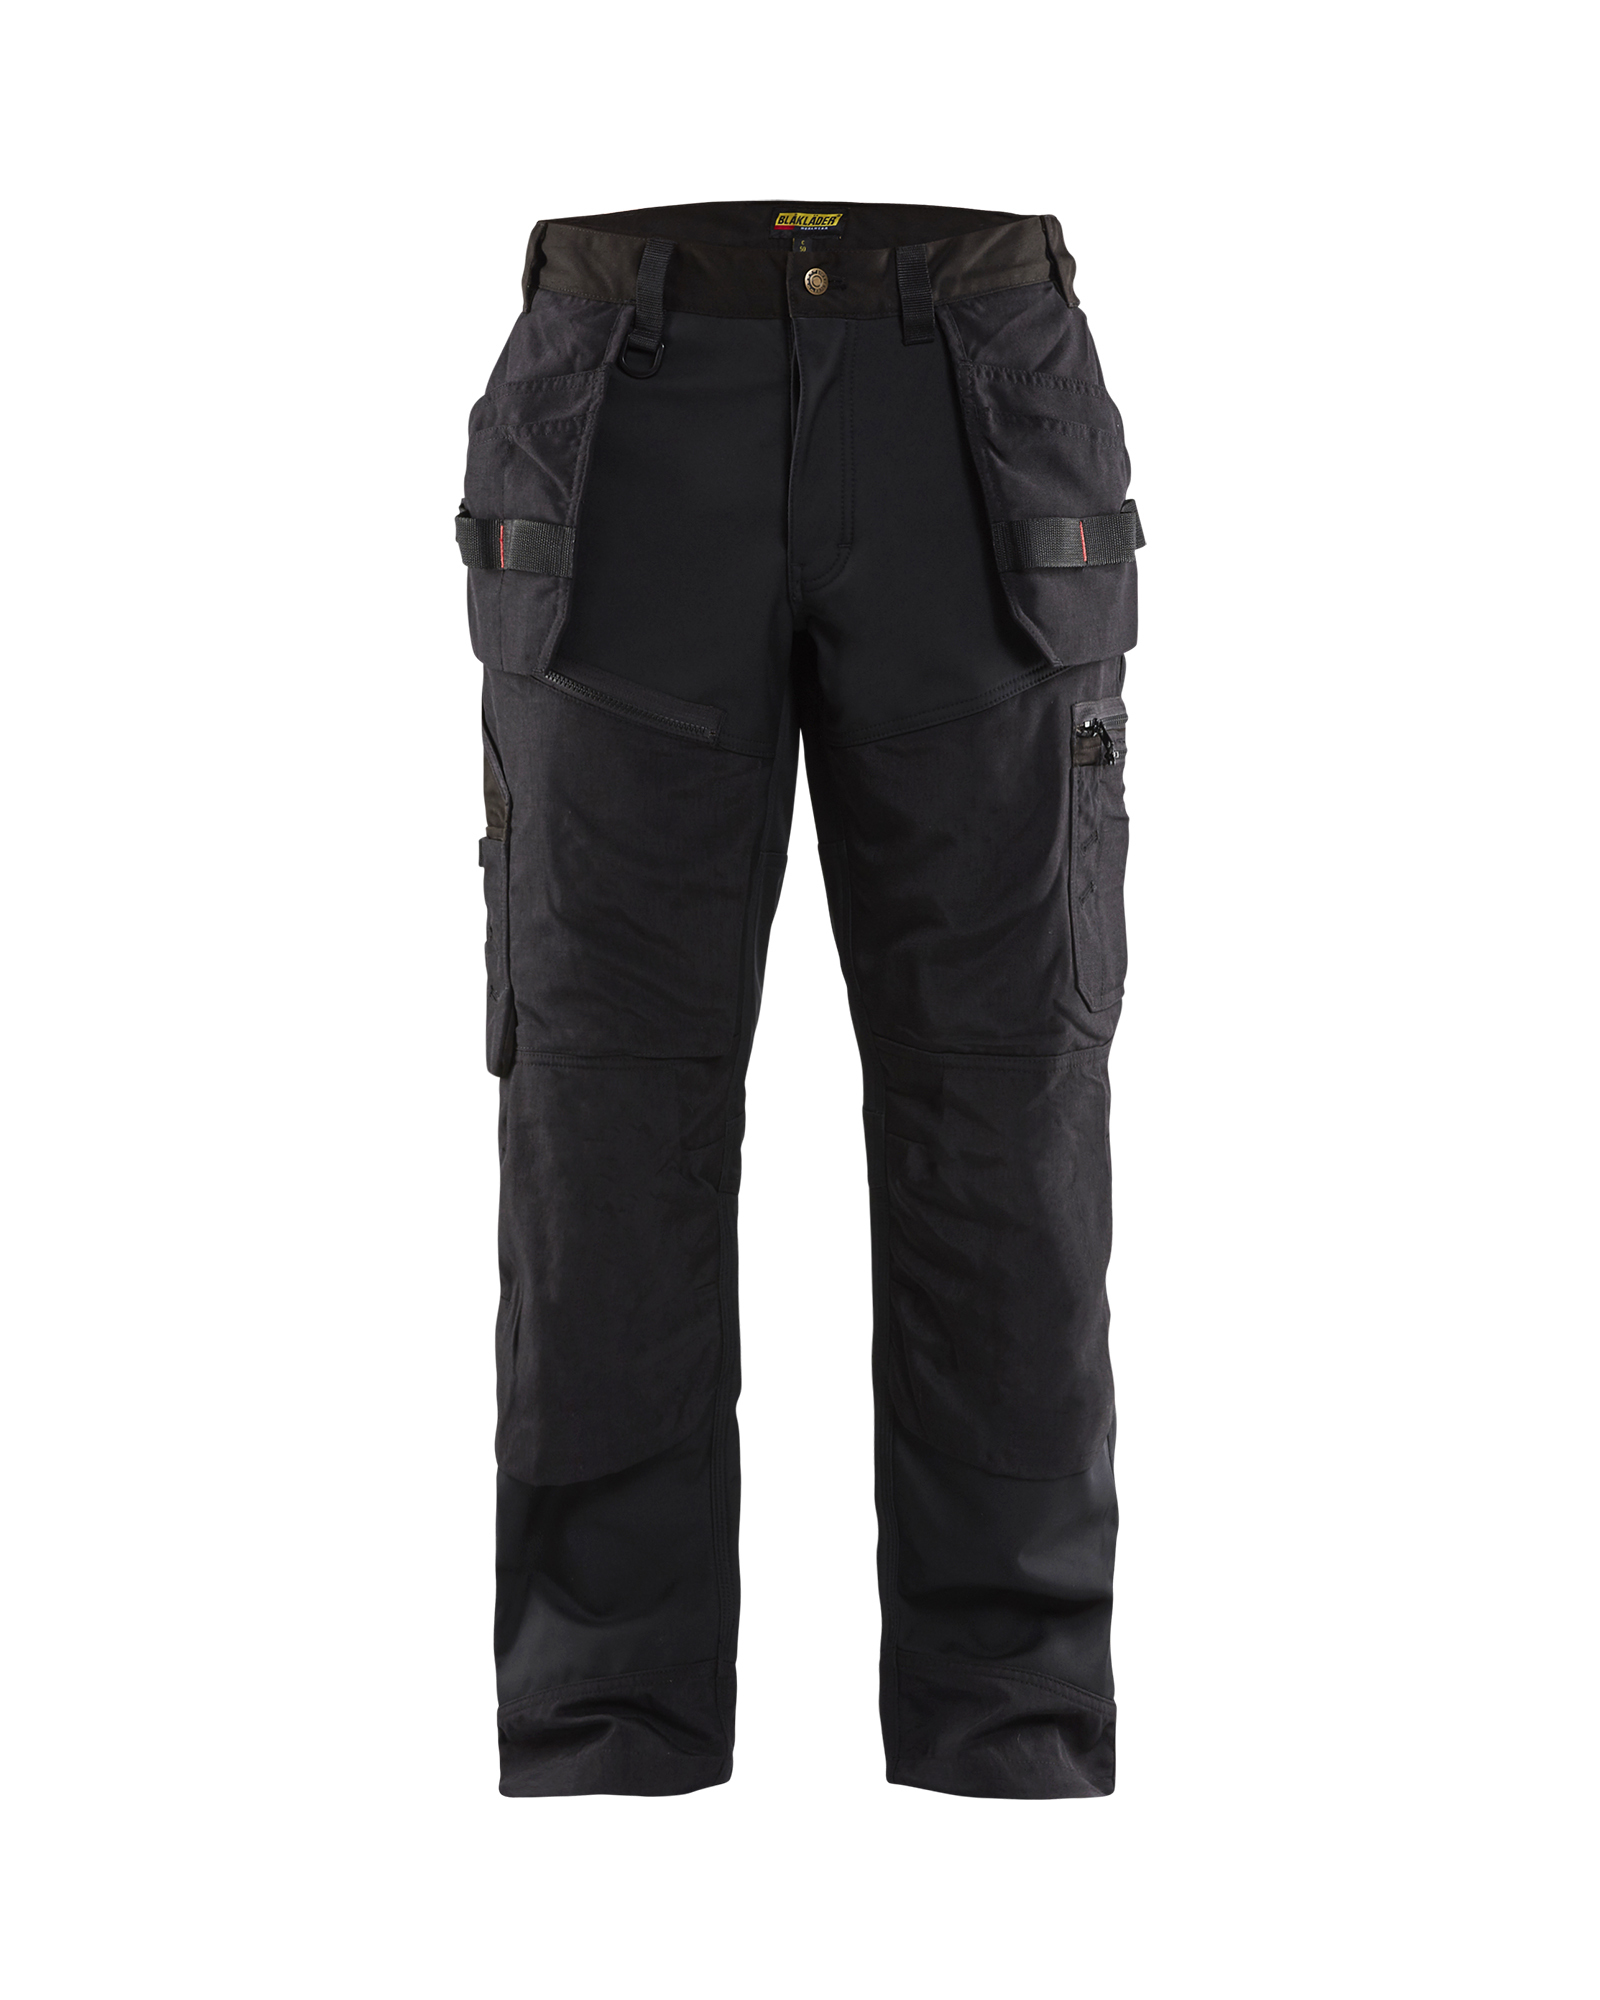 Pantalon artisan X1500 softshell Blåkläder 1500 Noir Blaklader - 150025179900C